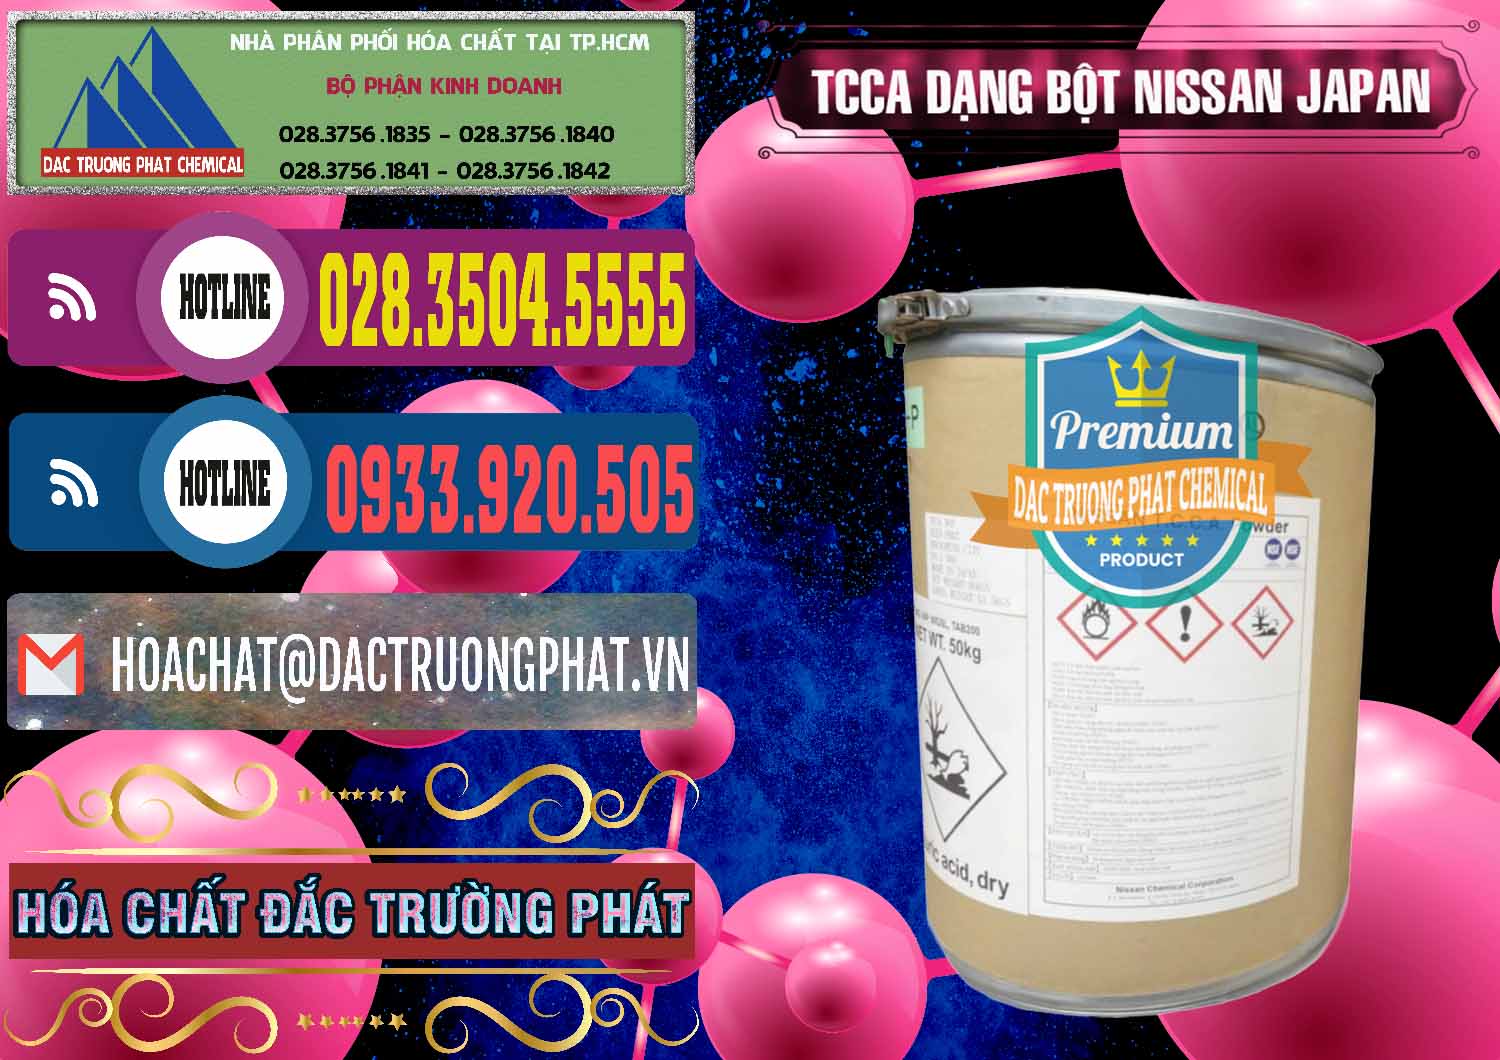 Cty bán & phân phối TCCA - Acid Trichloroisocyanuric 90% Dạng Bột Nissan Nhật Bản Japan - 0375 - Công ty phân phối và bán hóa chất tại TP.HCM - muabanhoachat.com.vn